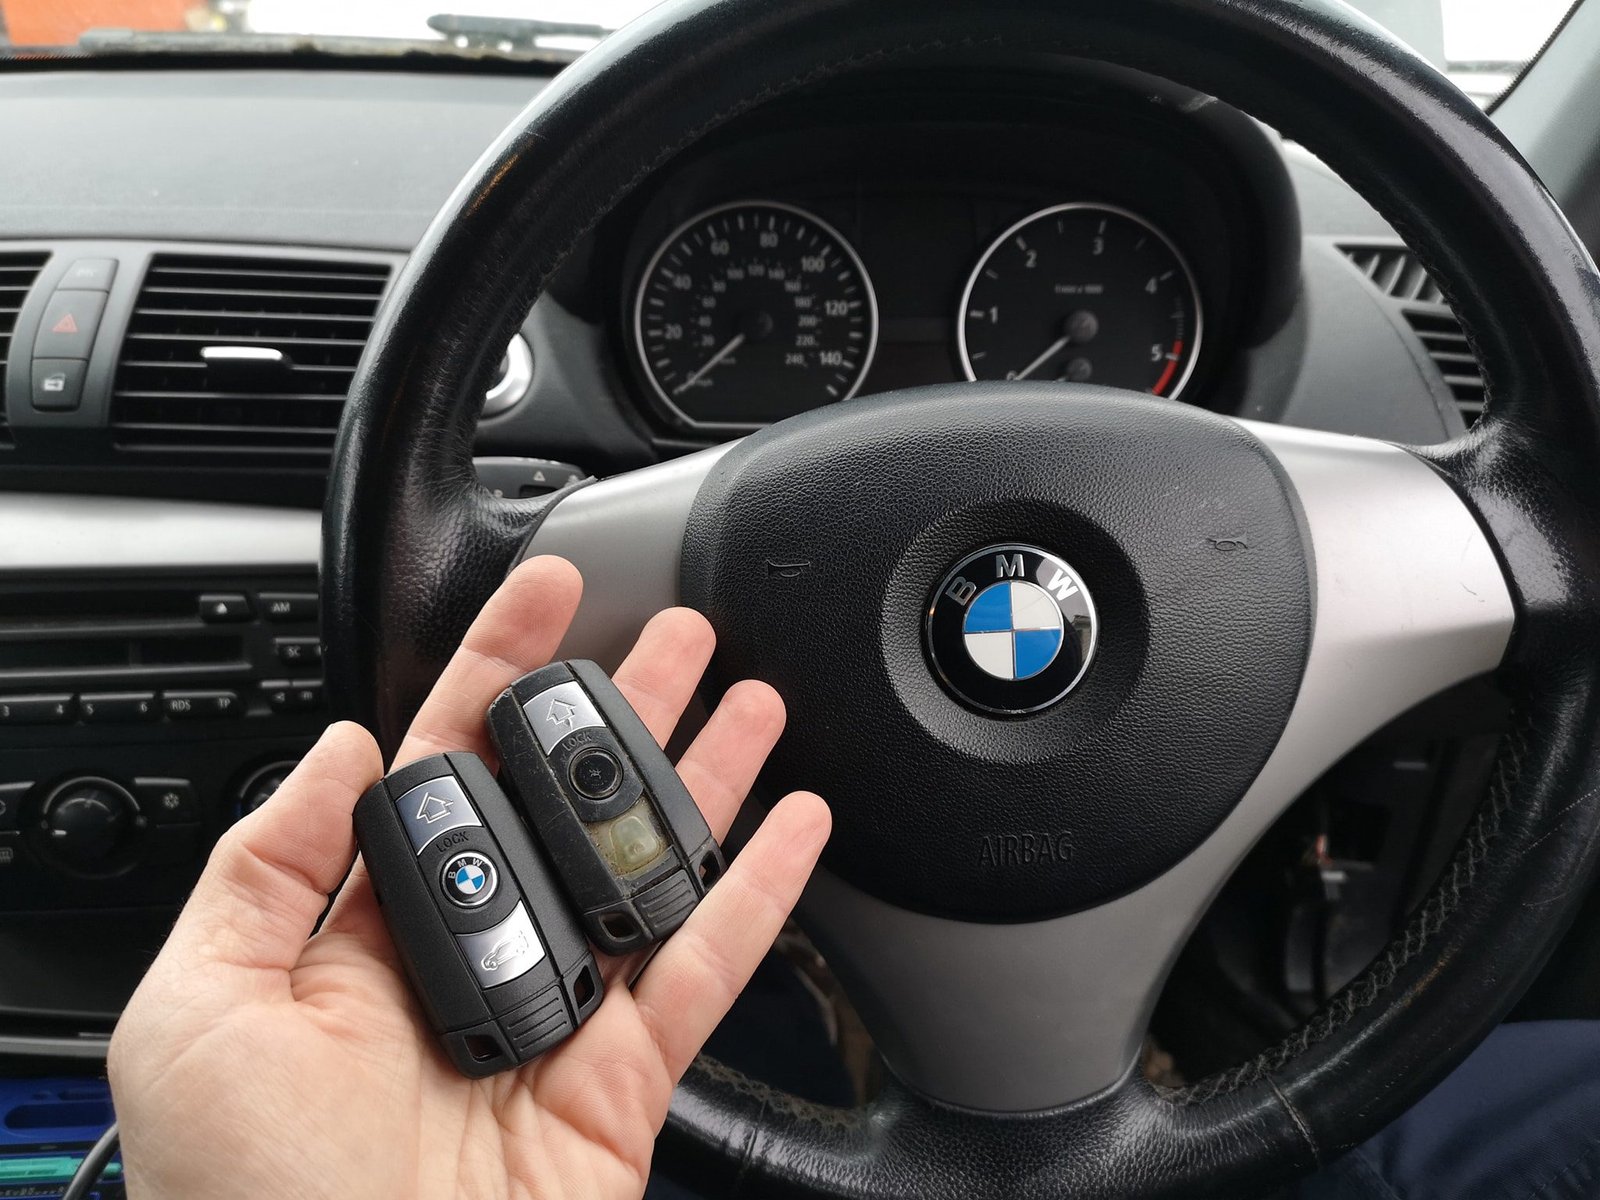 How to add BMW E87 Spare Key via Autel IM508 + XP400 Pro